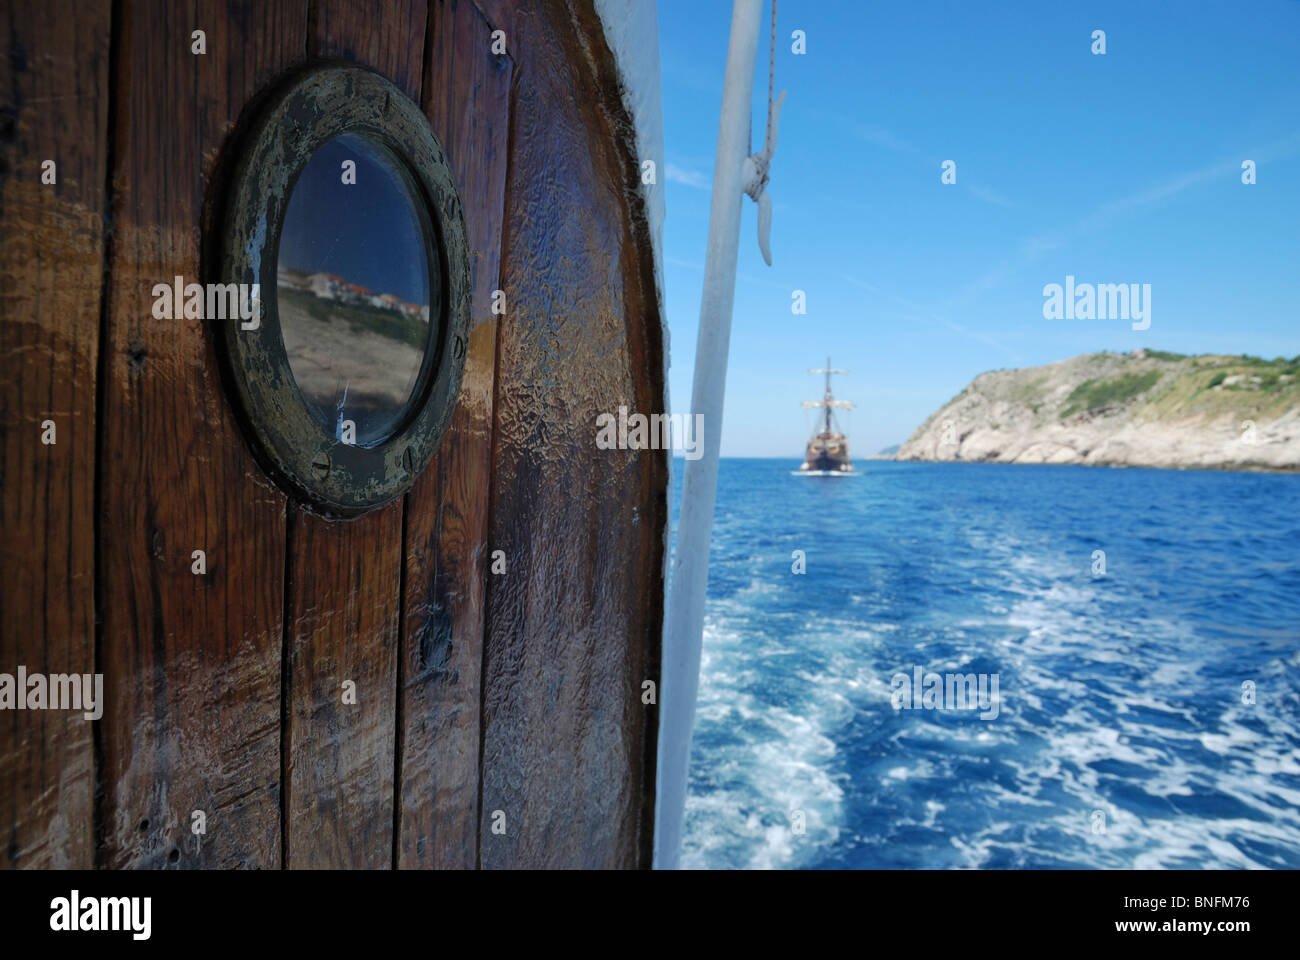 A porthole on a pleasure boat cruising the Elafiti Islands, Dalmation Coast, Croatia. Stock Photo